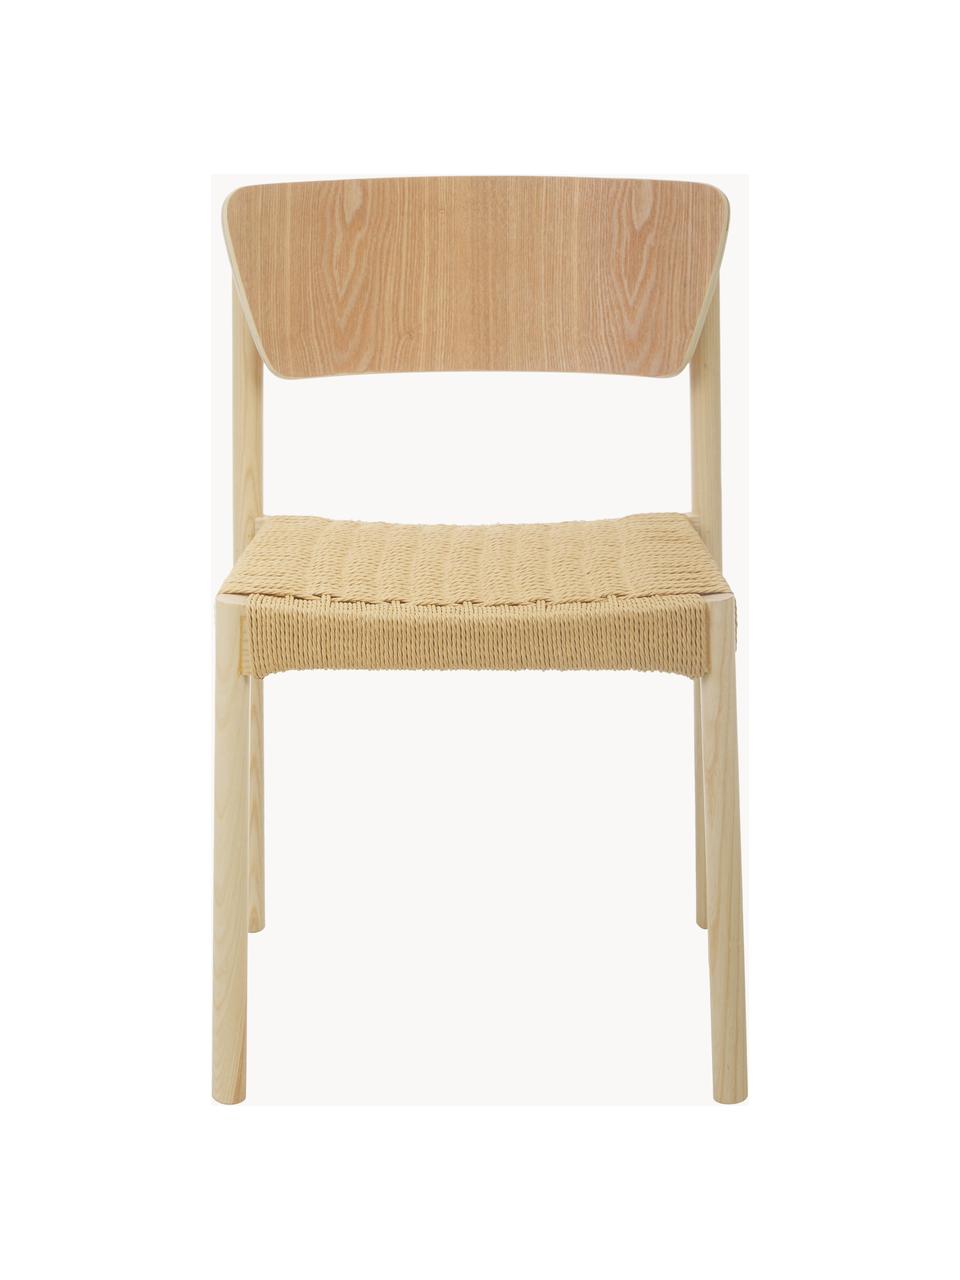 Drevené stoličky s ratanovým sedadlom Danny, 2 ks, Bukové drevo, béžová, Š 52 x H 51 cm